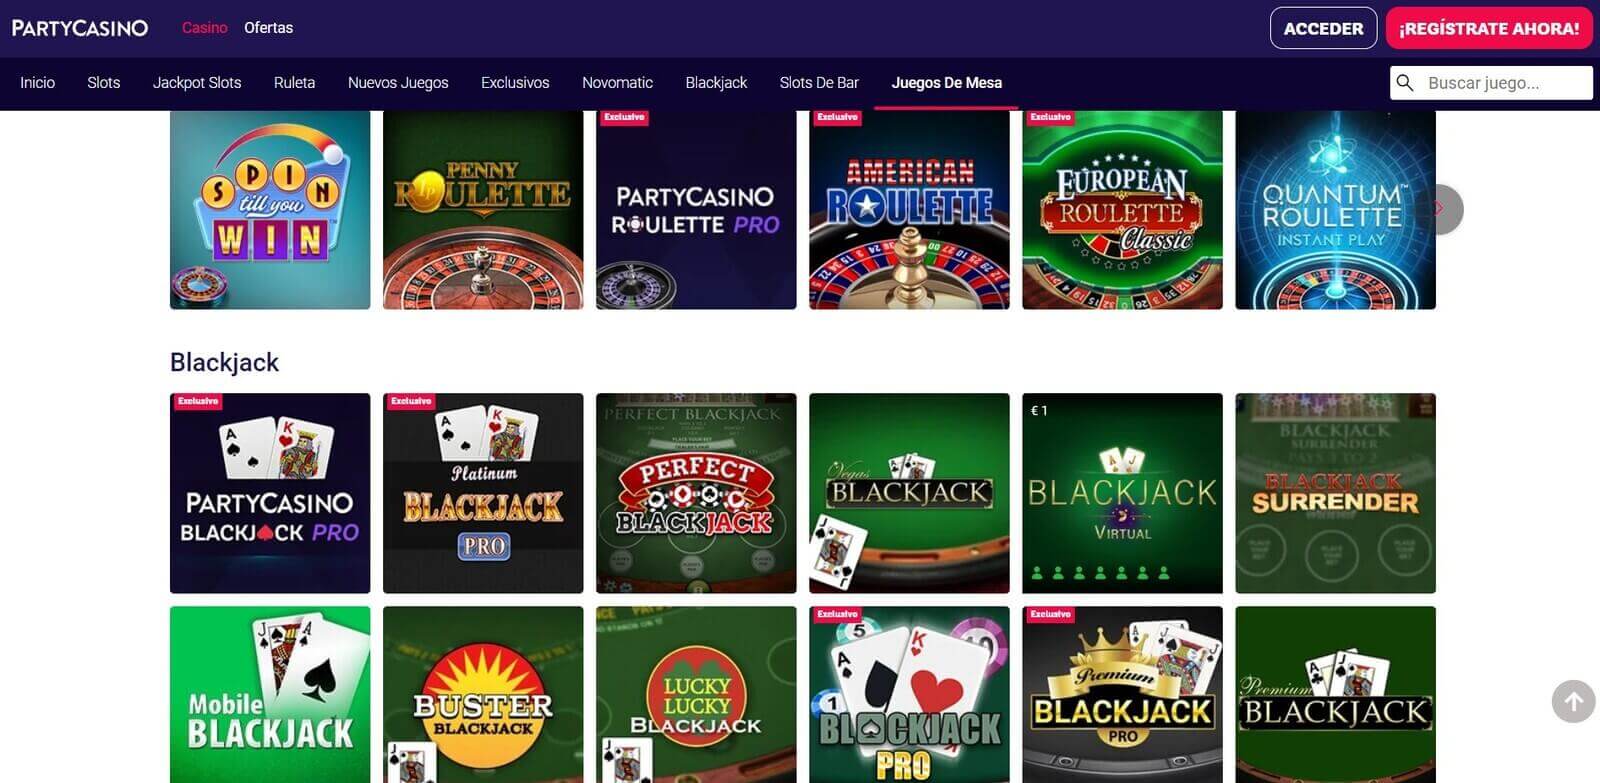 Juegos en Party Casino online de España